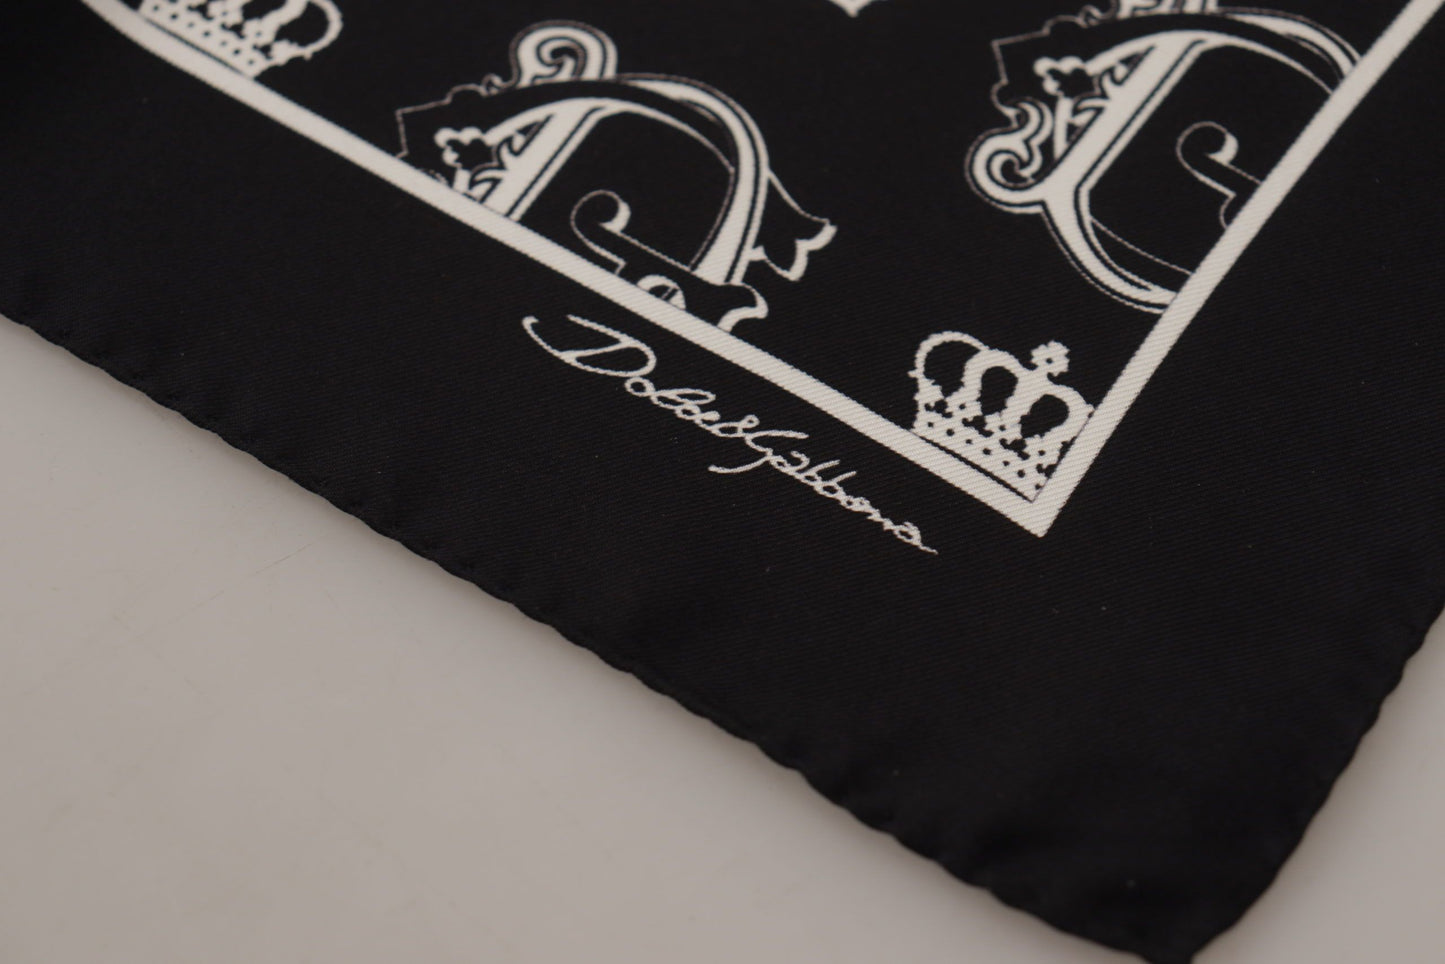 Dolce & Gabbana Black DG Crown Print Square Taschentuch